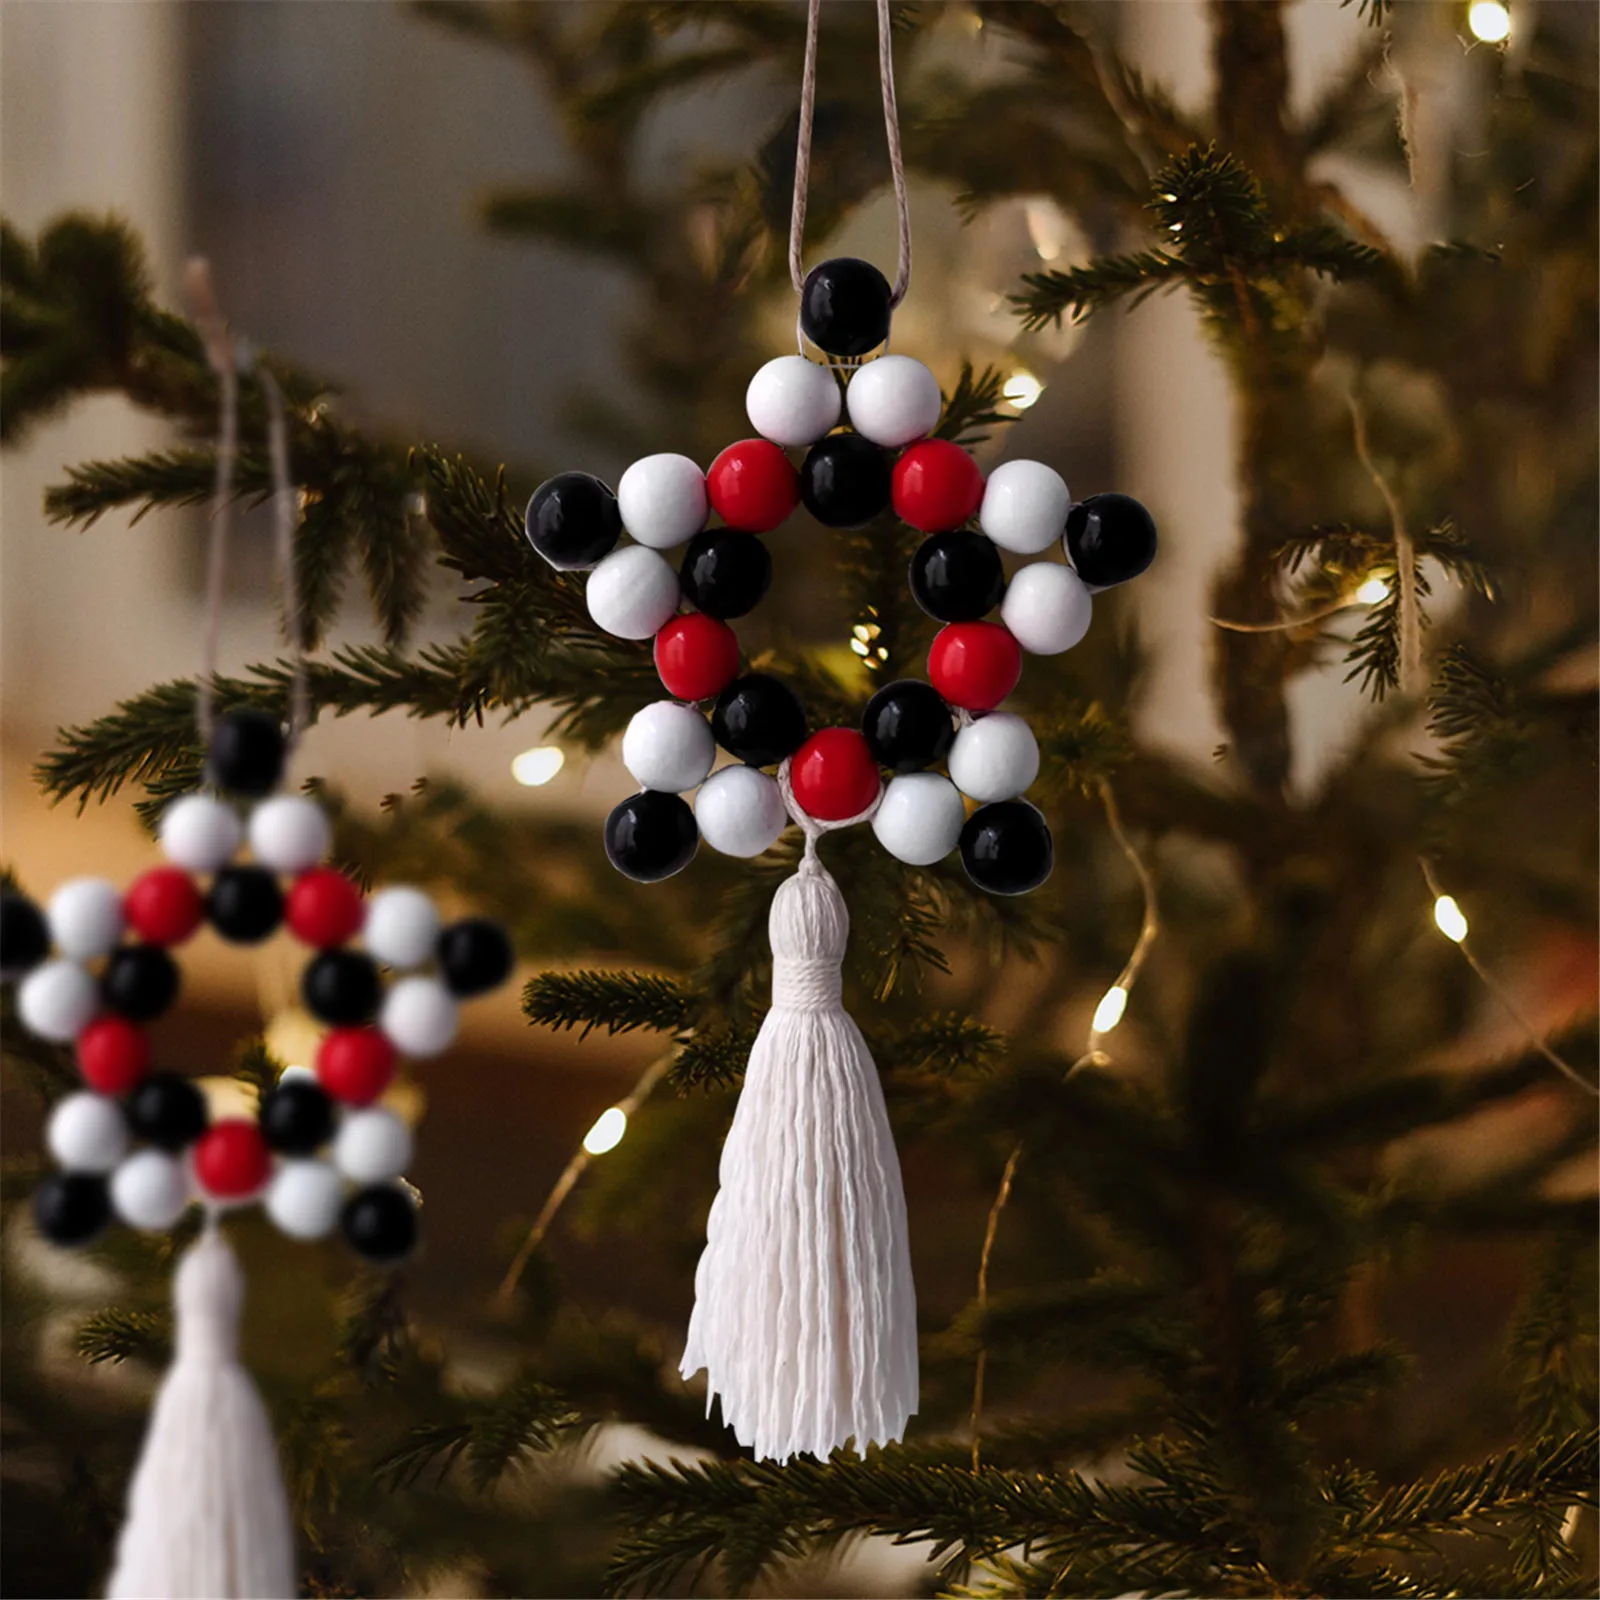 Tree-on-Life Cuerdas de Papel en Forma de Estrella Decoración de Gota Colgante Fiesta de Boda Decoraciones navideñas para el hogar Adorno Colgante Suministros para Festivales 